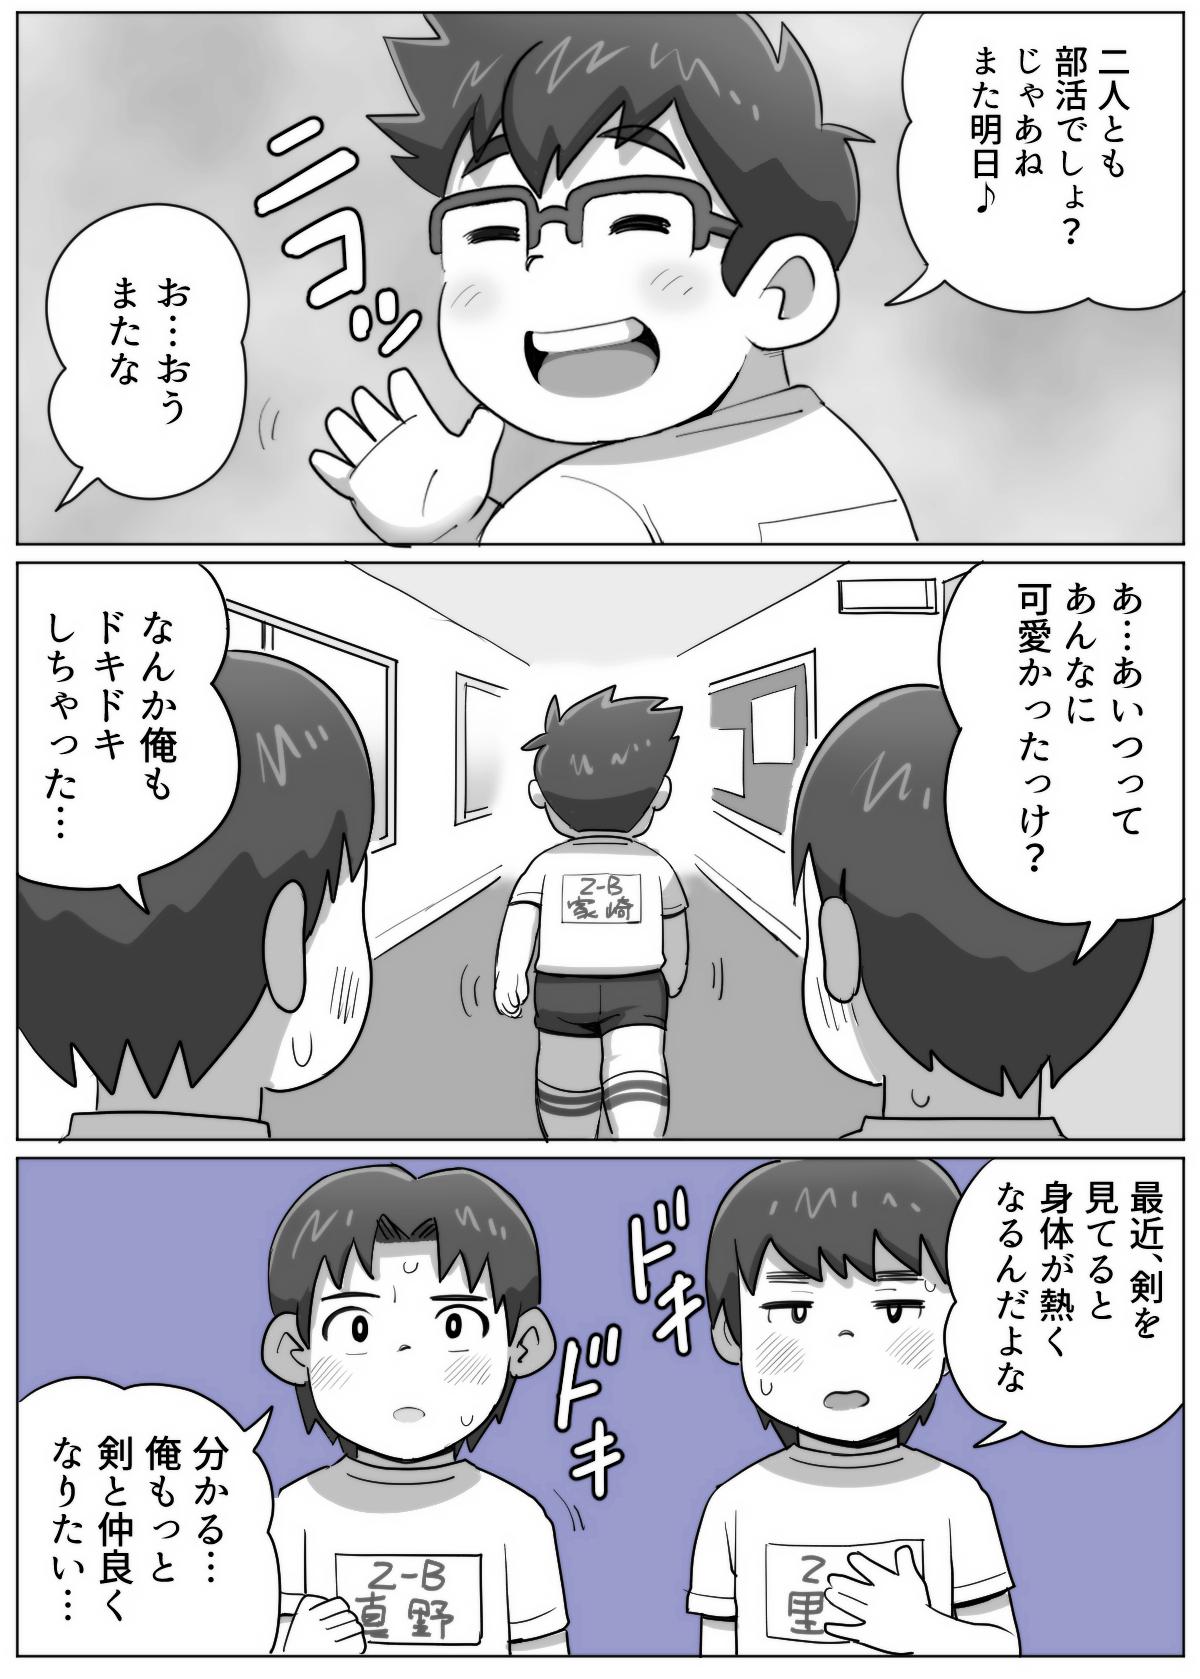 obeccho - 短編漫画「施術にようこそ！剣くん編」 69